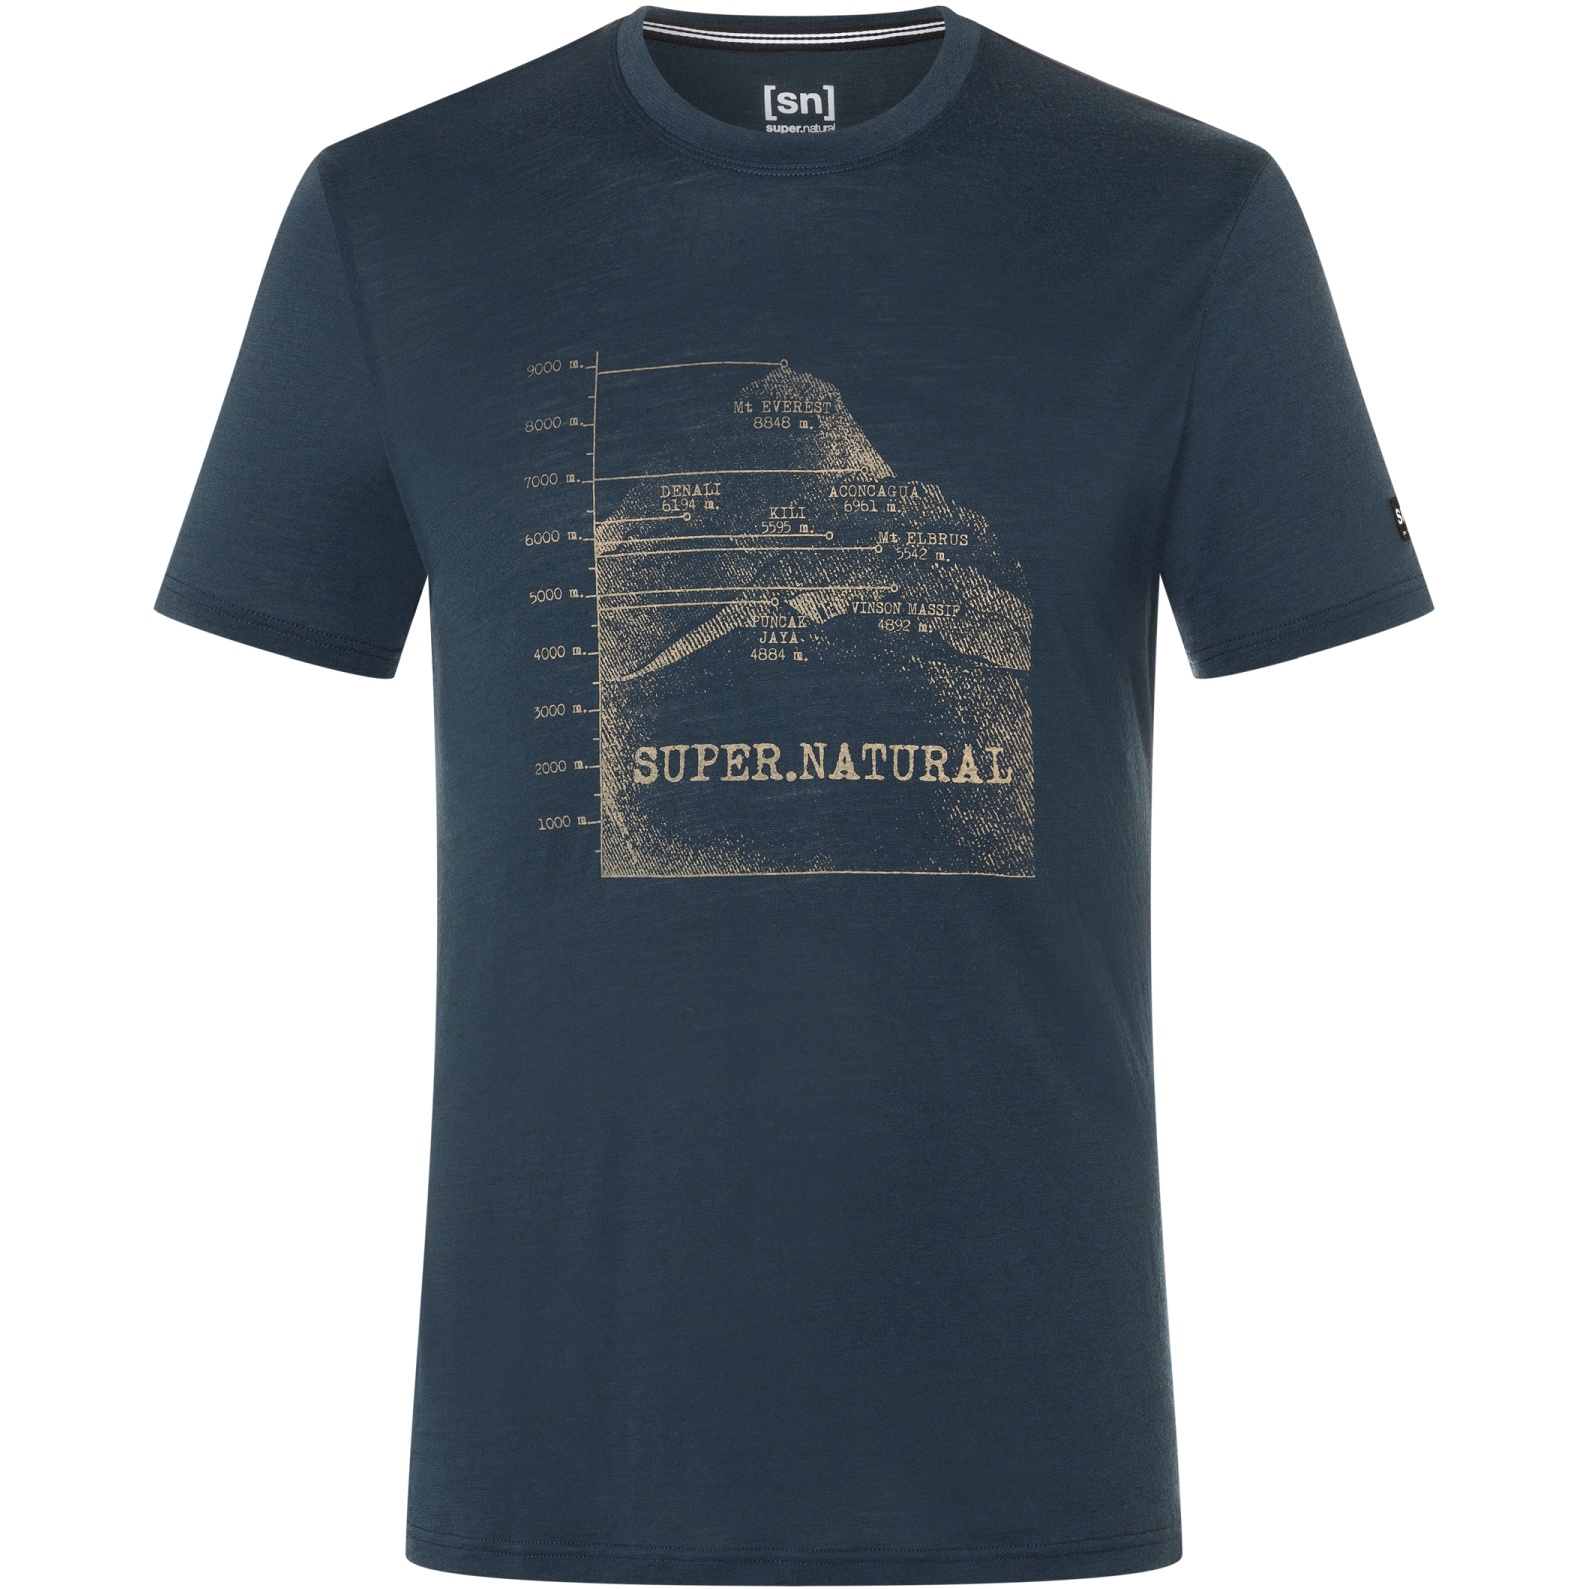 Bild von SUPER.NATURAL 7 Peaks T-Shirt Herren - Blueberry/Oak